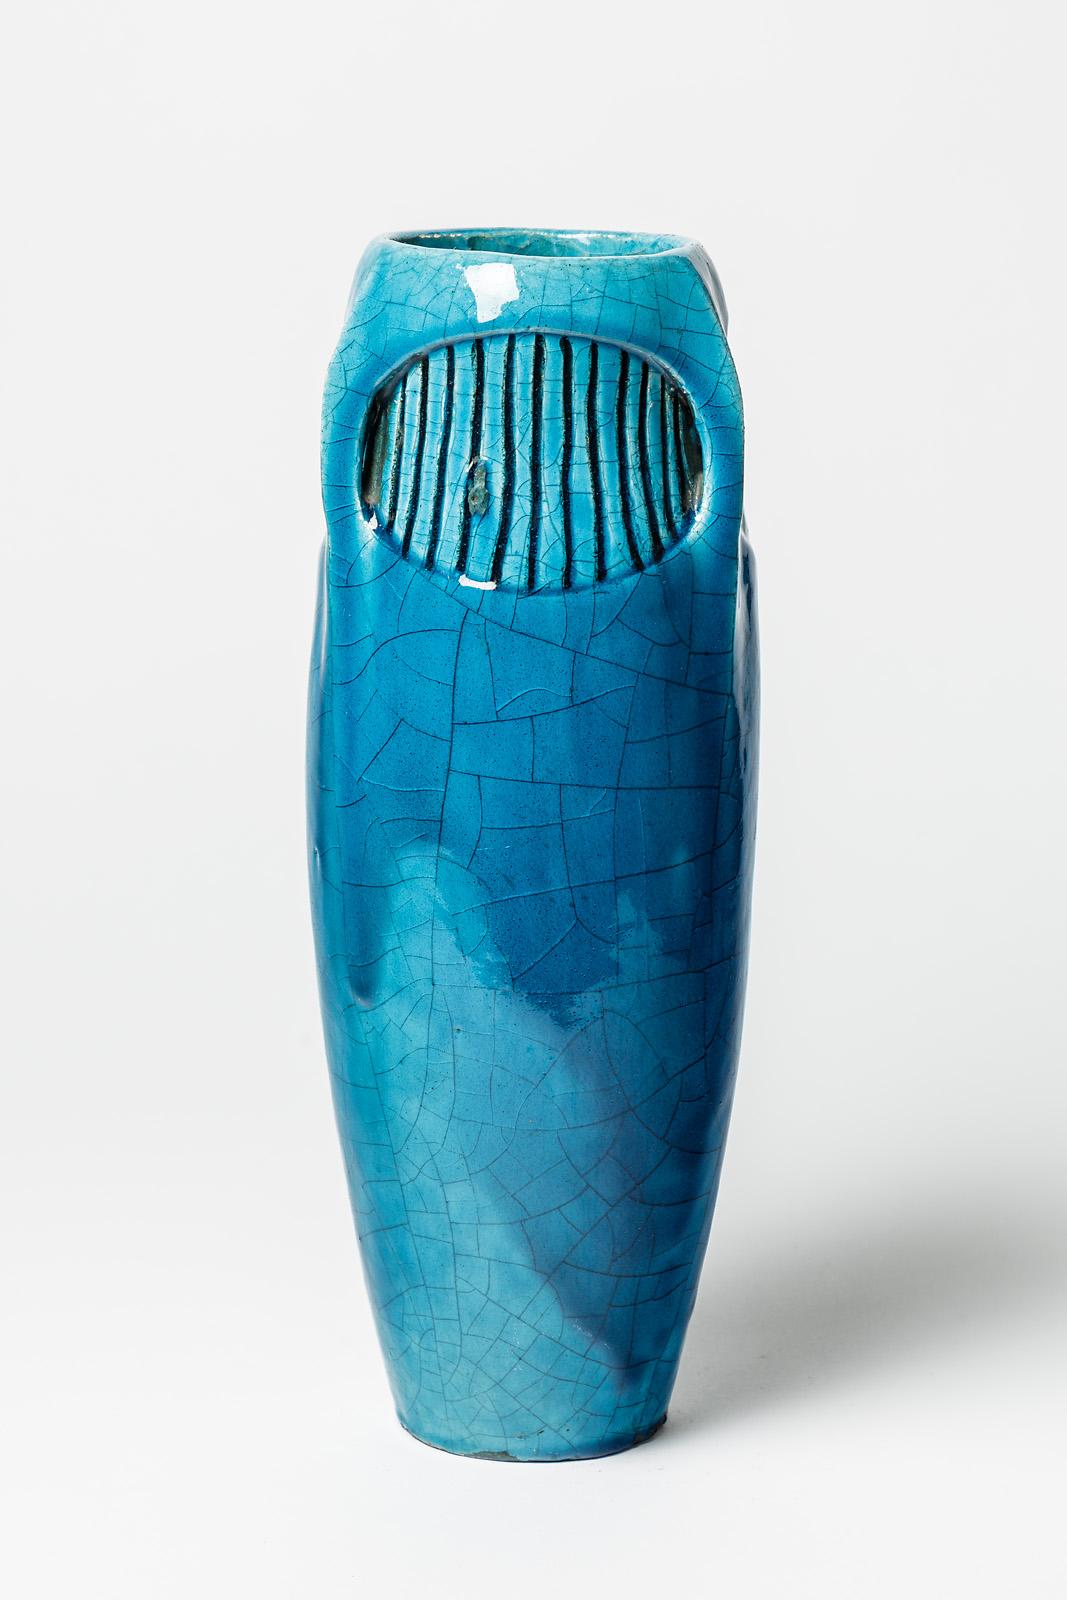 French Large Blue Art Deco Ceramic Vase by Edmond Lachenal 1900 Decoration 